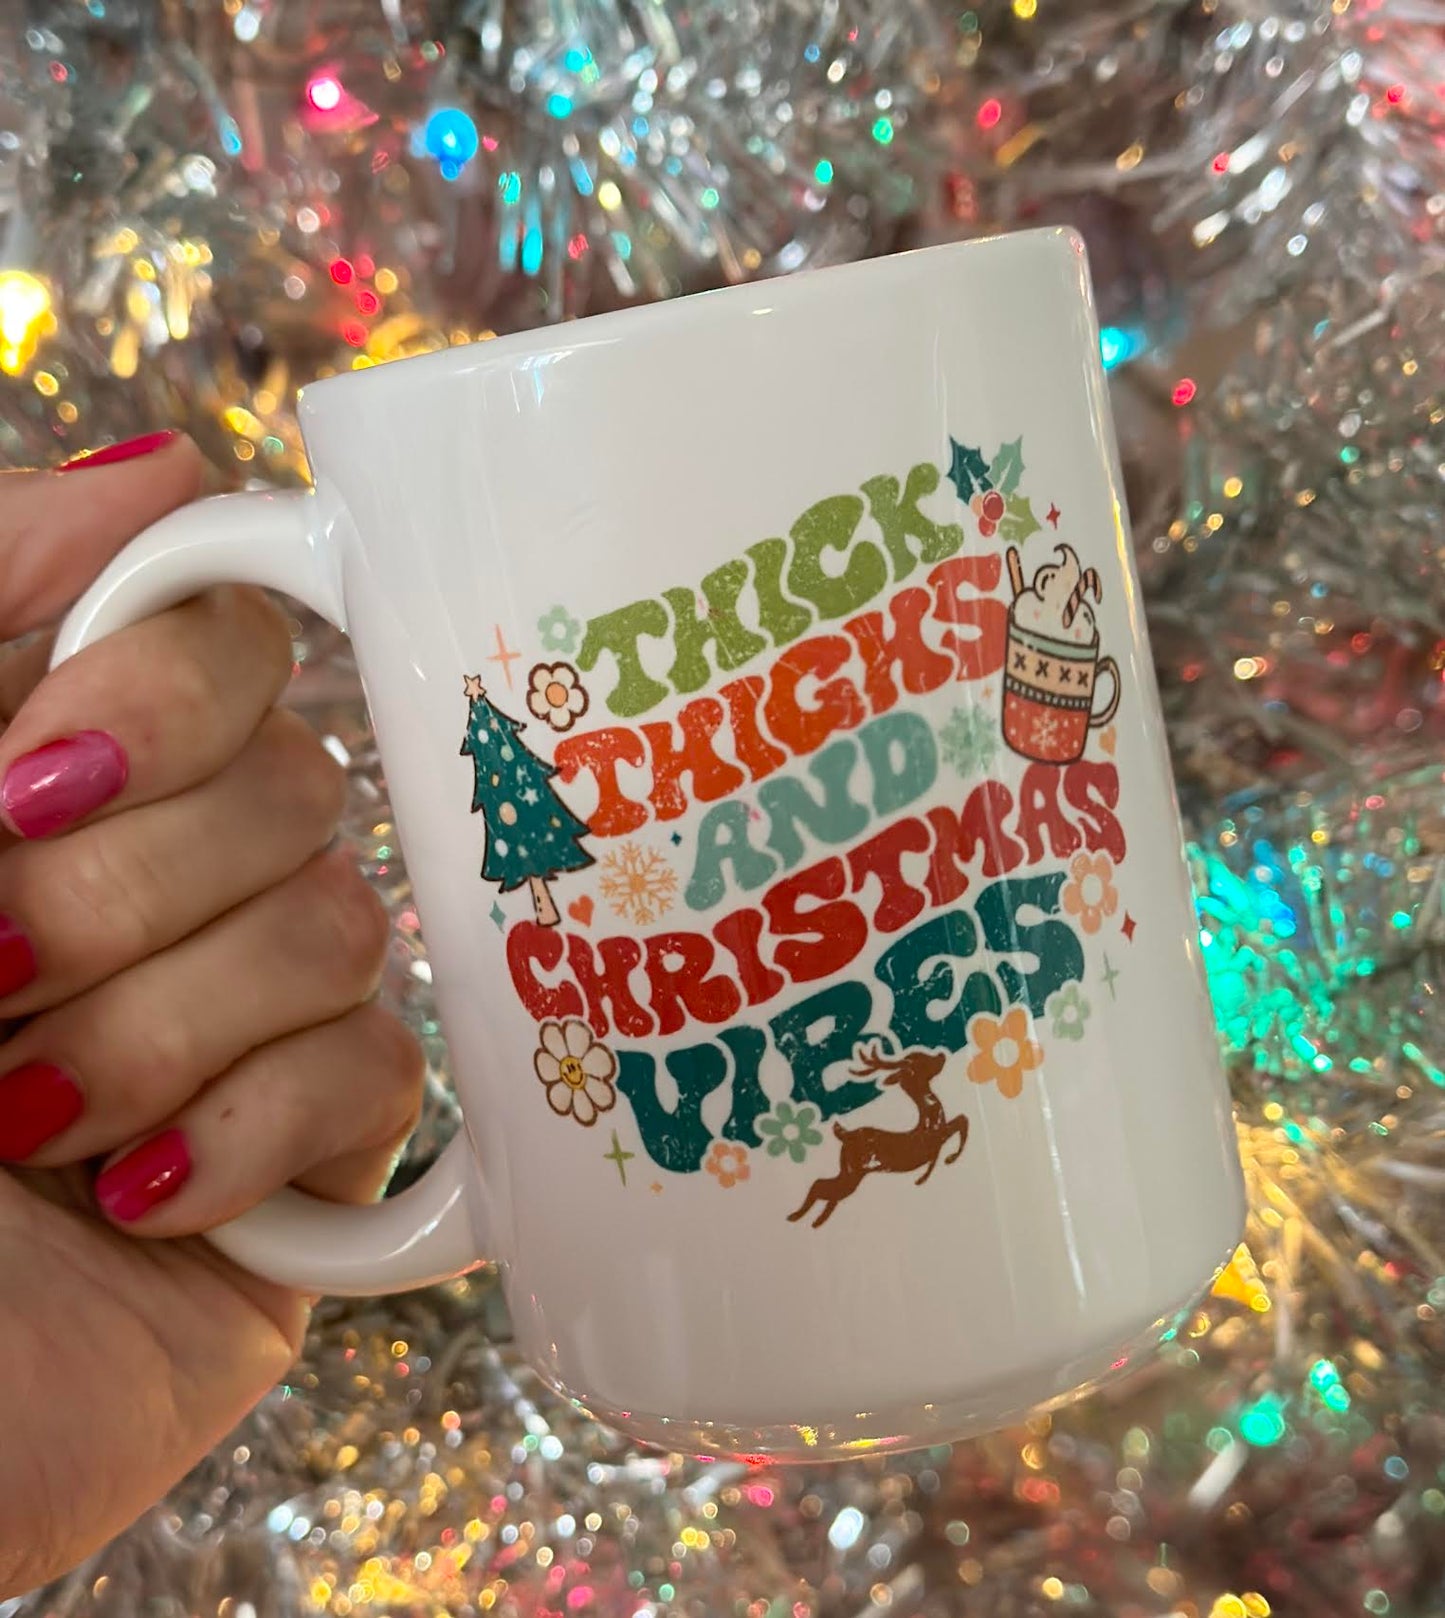 Thick Thighs & Christmas Vibes 15 oz Mug